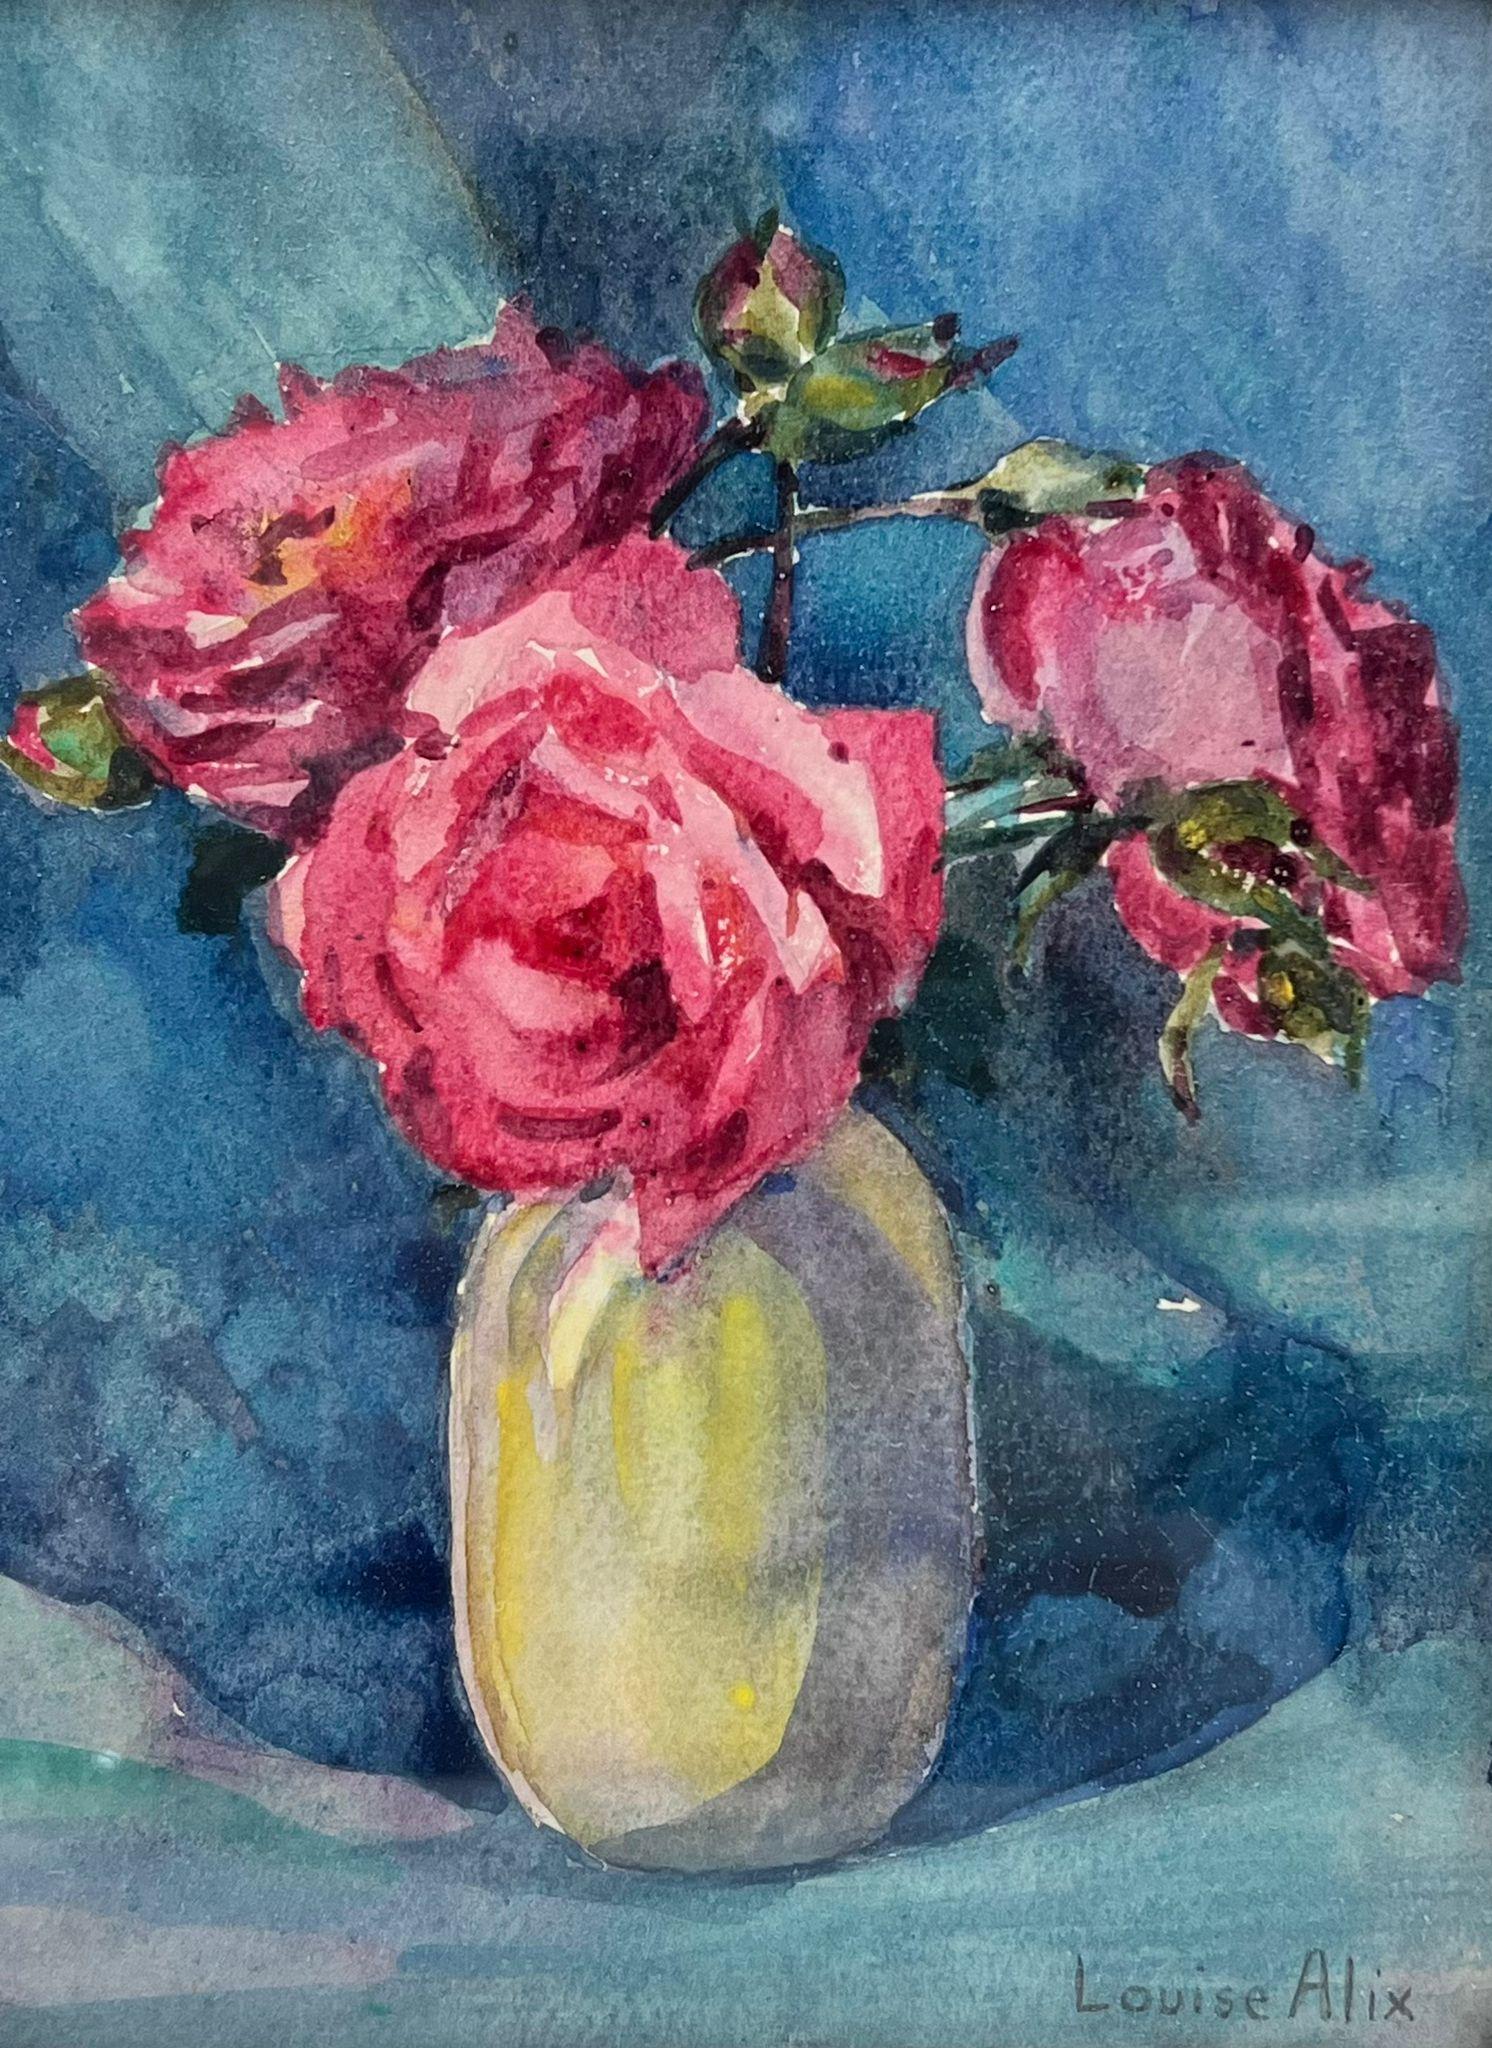 Französische Impressionistische Vintage-Vase mit rosa Rosen in weißer Farbe, im Vintage-Stil, blau innen – Painting von Louise Alix